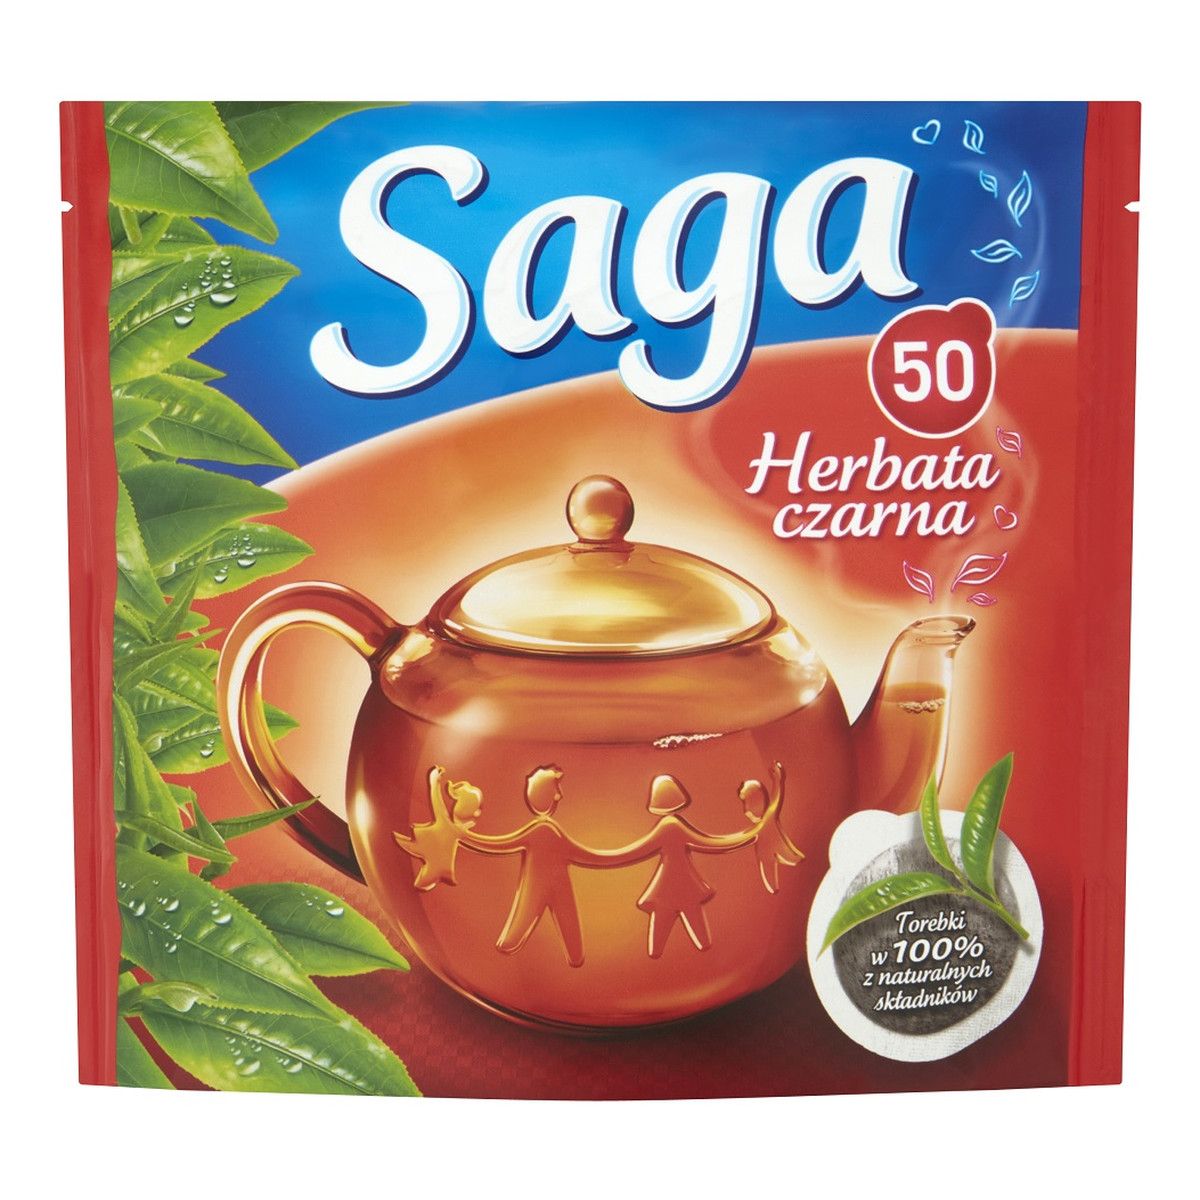 Saga Herbata czarna 50 torebek 70g